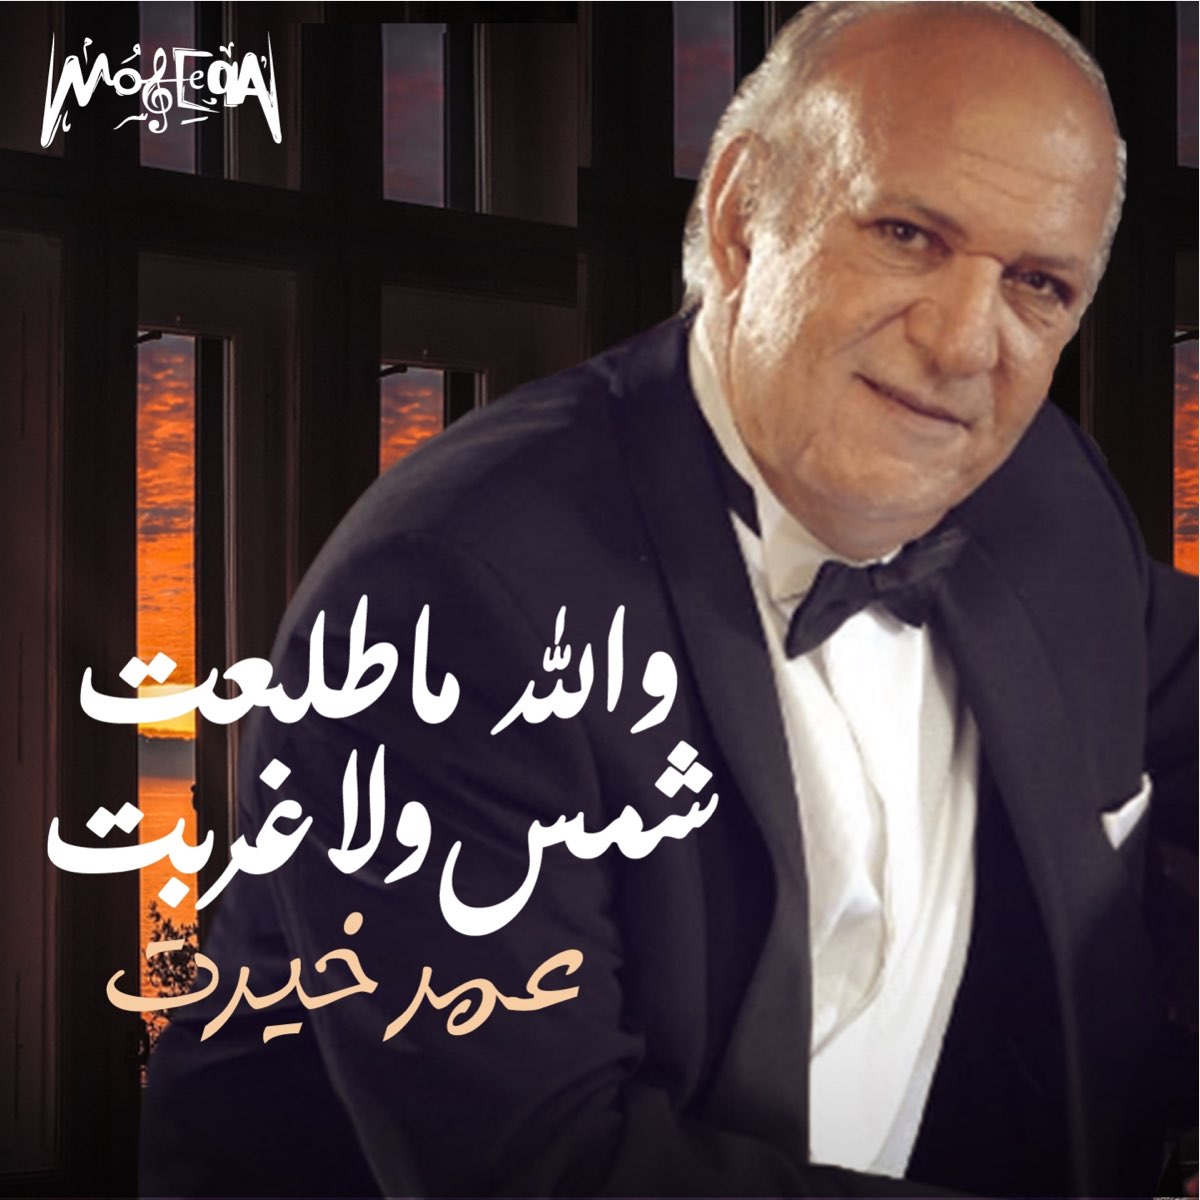 والله ما طلعت شمس ولا غربت - Single by Omar Khairat on Apple Music